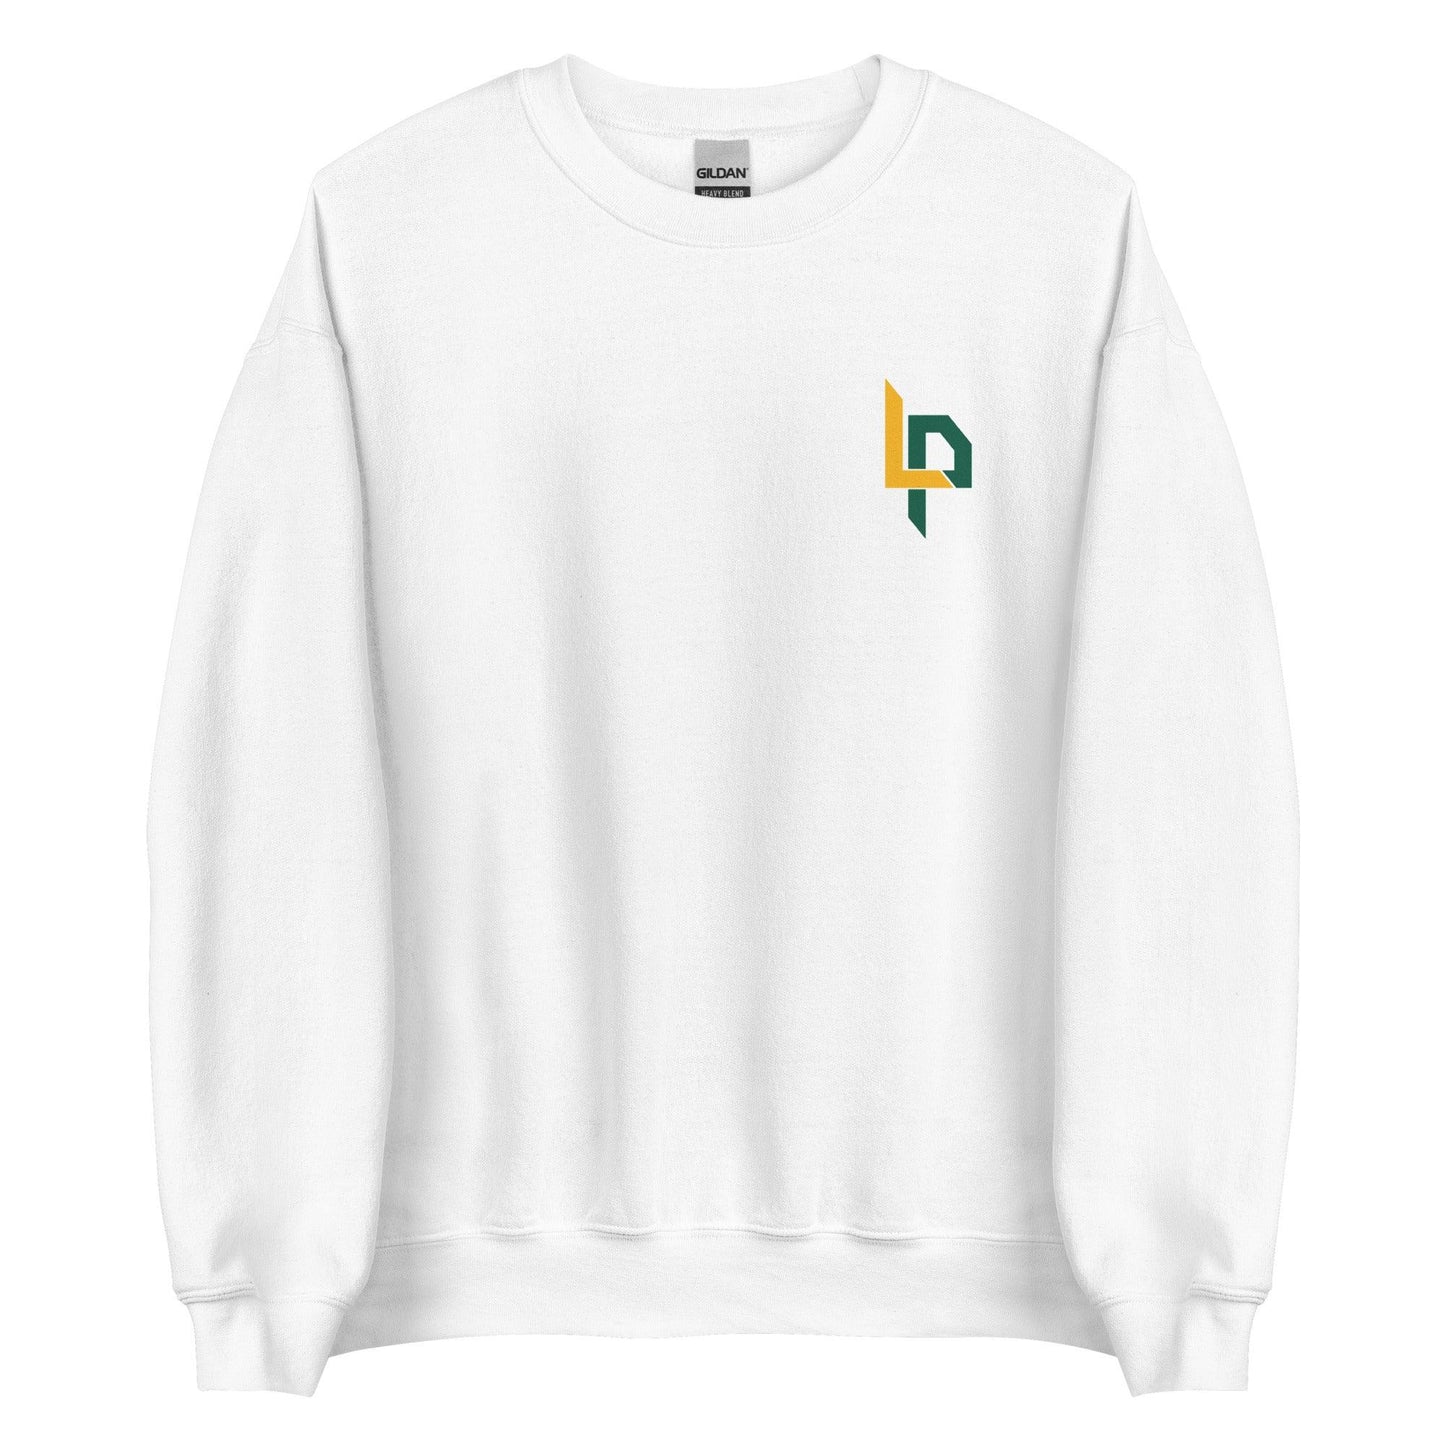 Lachlan Pitts "Essential" Sweatshirt - Fan Arch